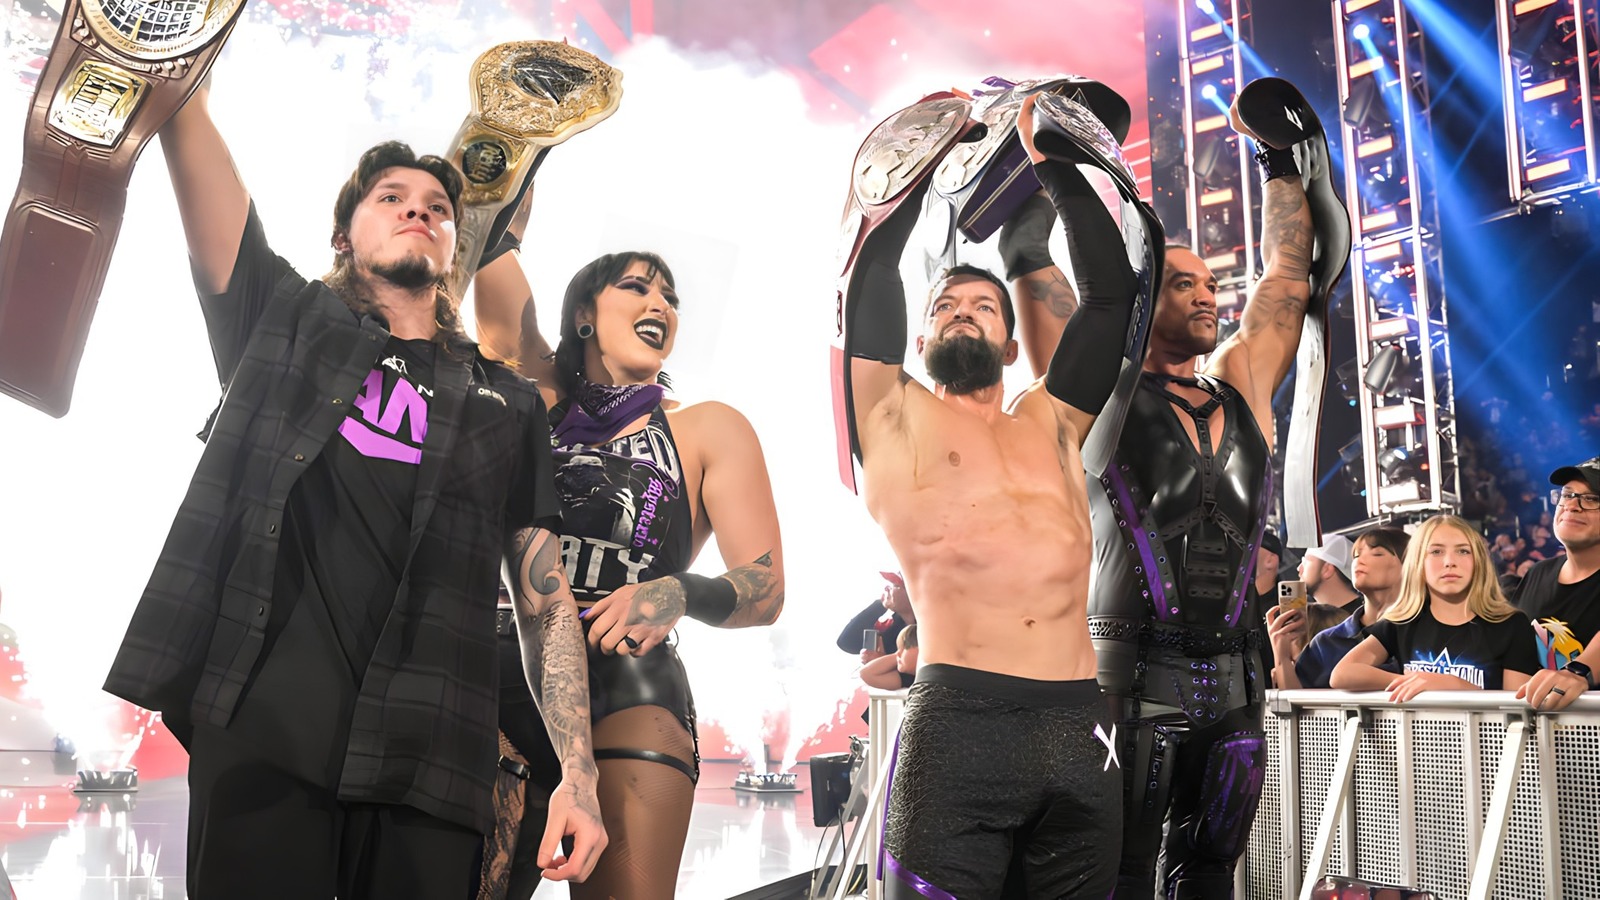 Ocho competidores aparentemente confirmados para el combate masculino de WarGames en WWE Survivor Series